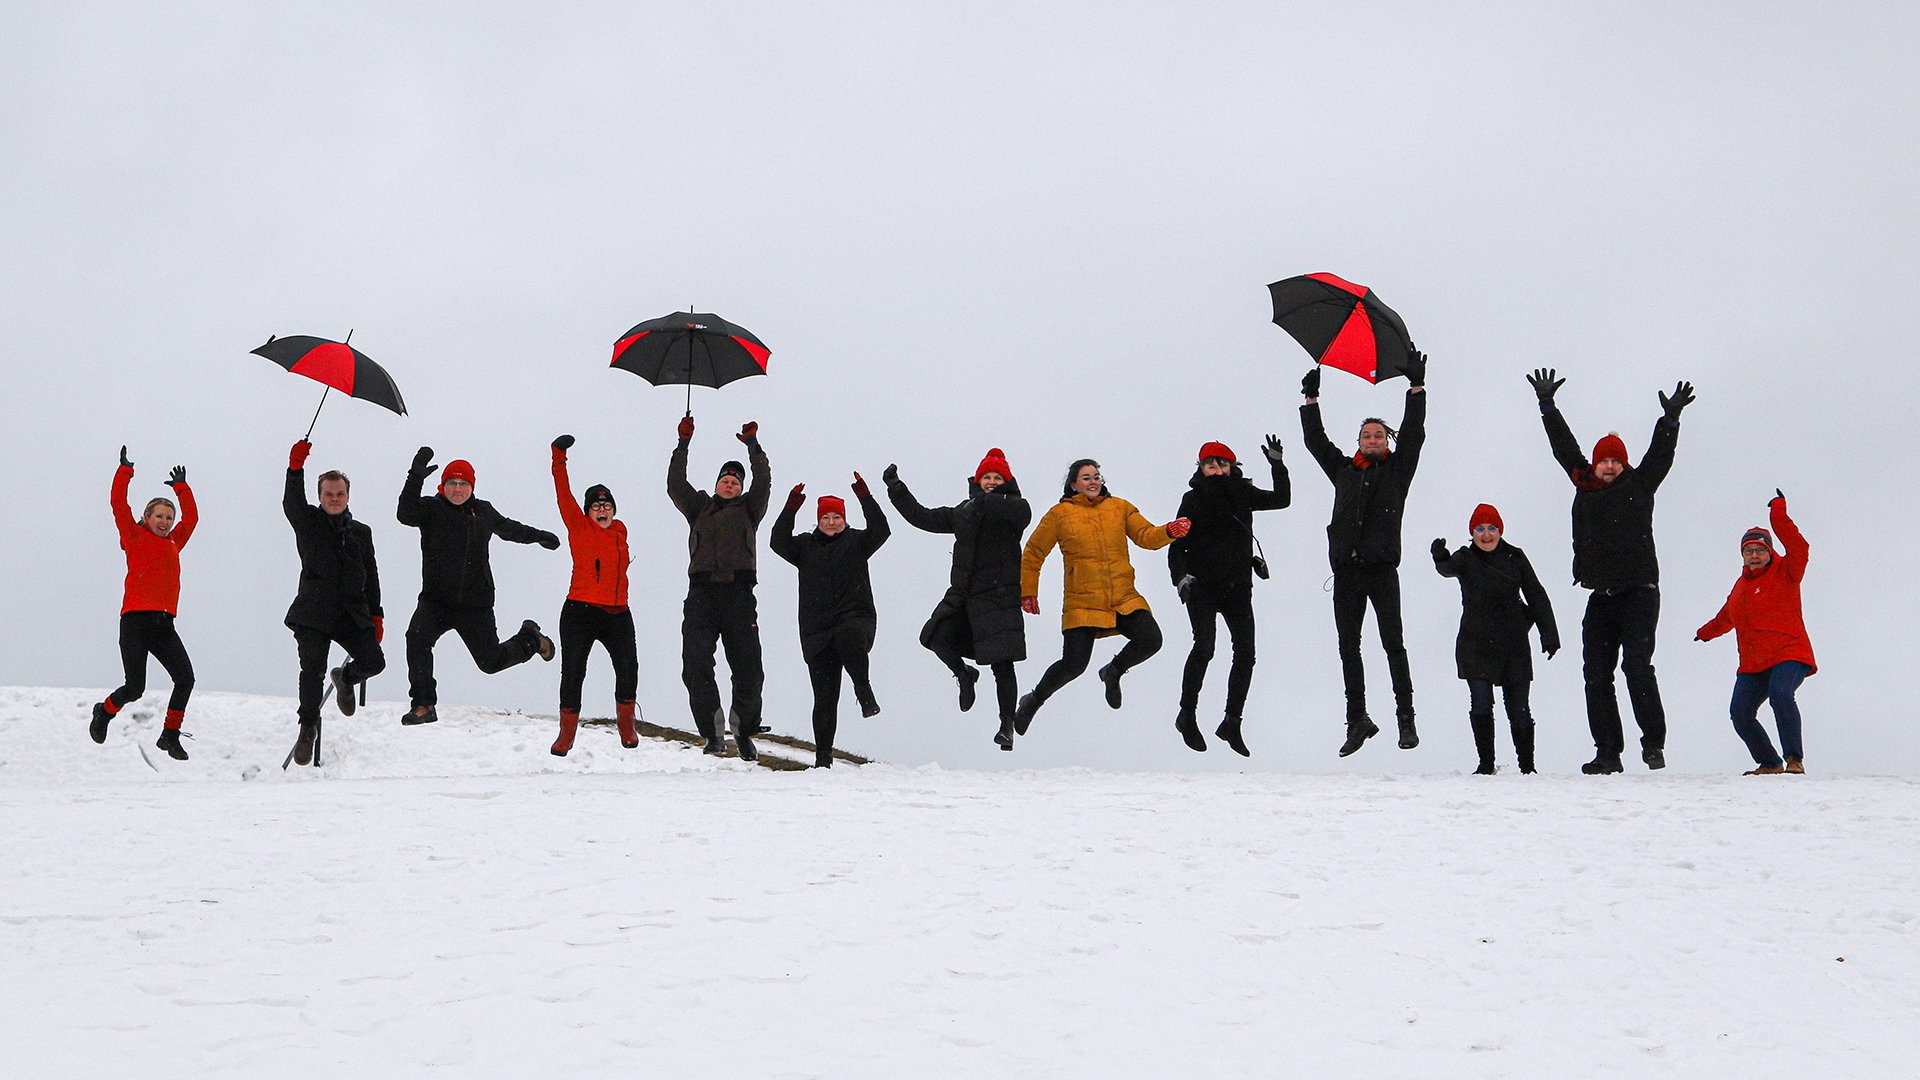 Etelä-Karjalan liiton henkilöstöä hyppimässä talvisessa maisemassa.